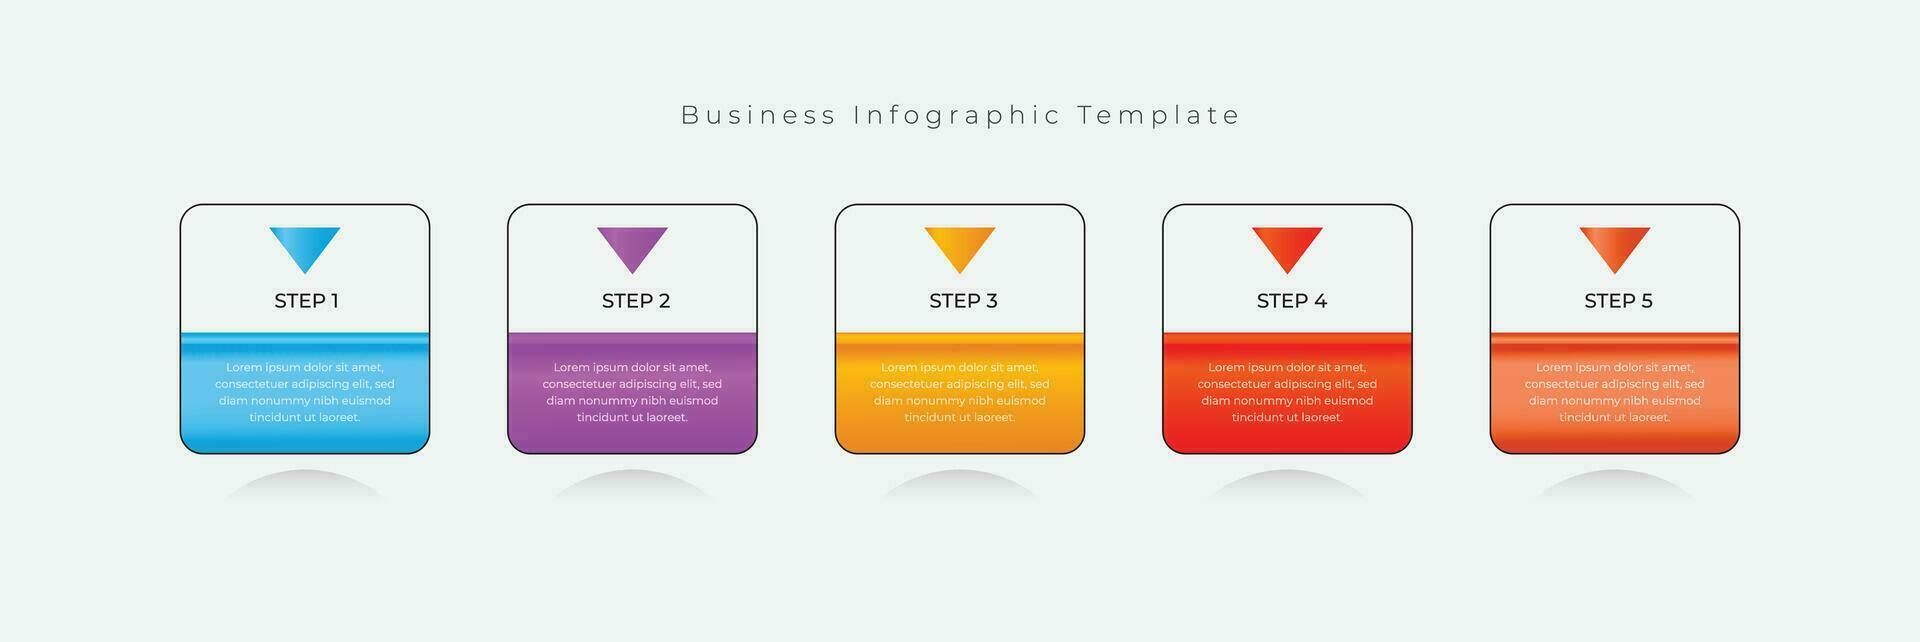 infographic företag design mall vektor för infographic tidslinje, steg, teknologi, människor, Diagram, Graf, flödesschema, diagram, cirkel märka, infographic layout design